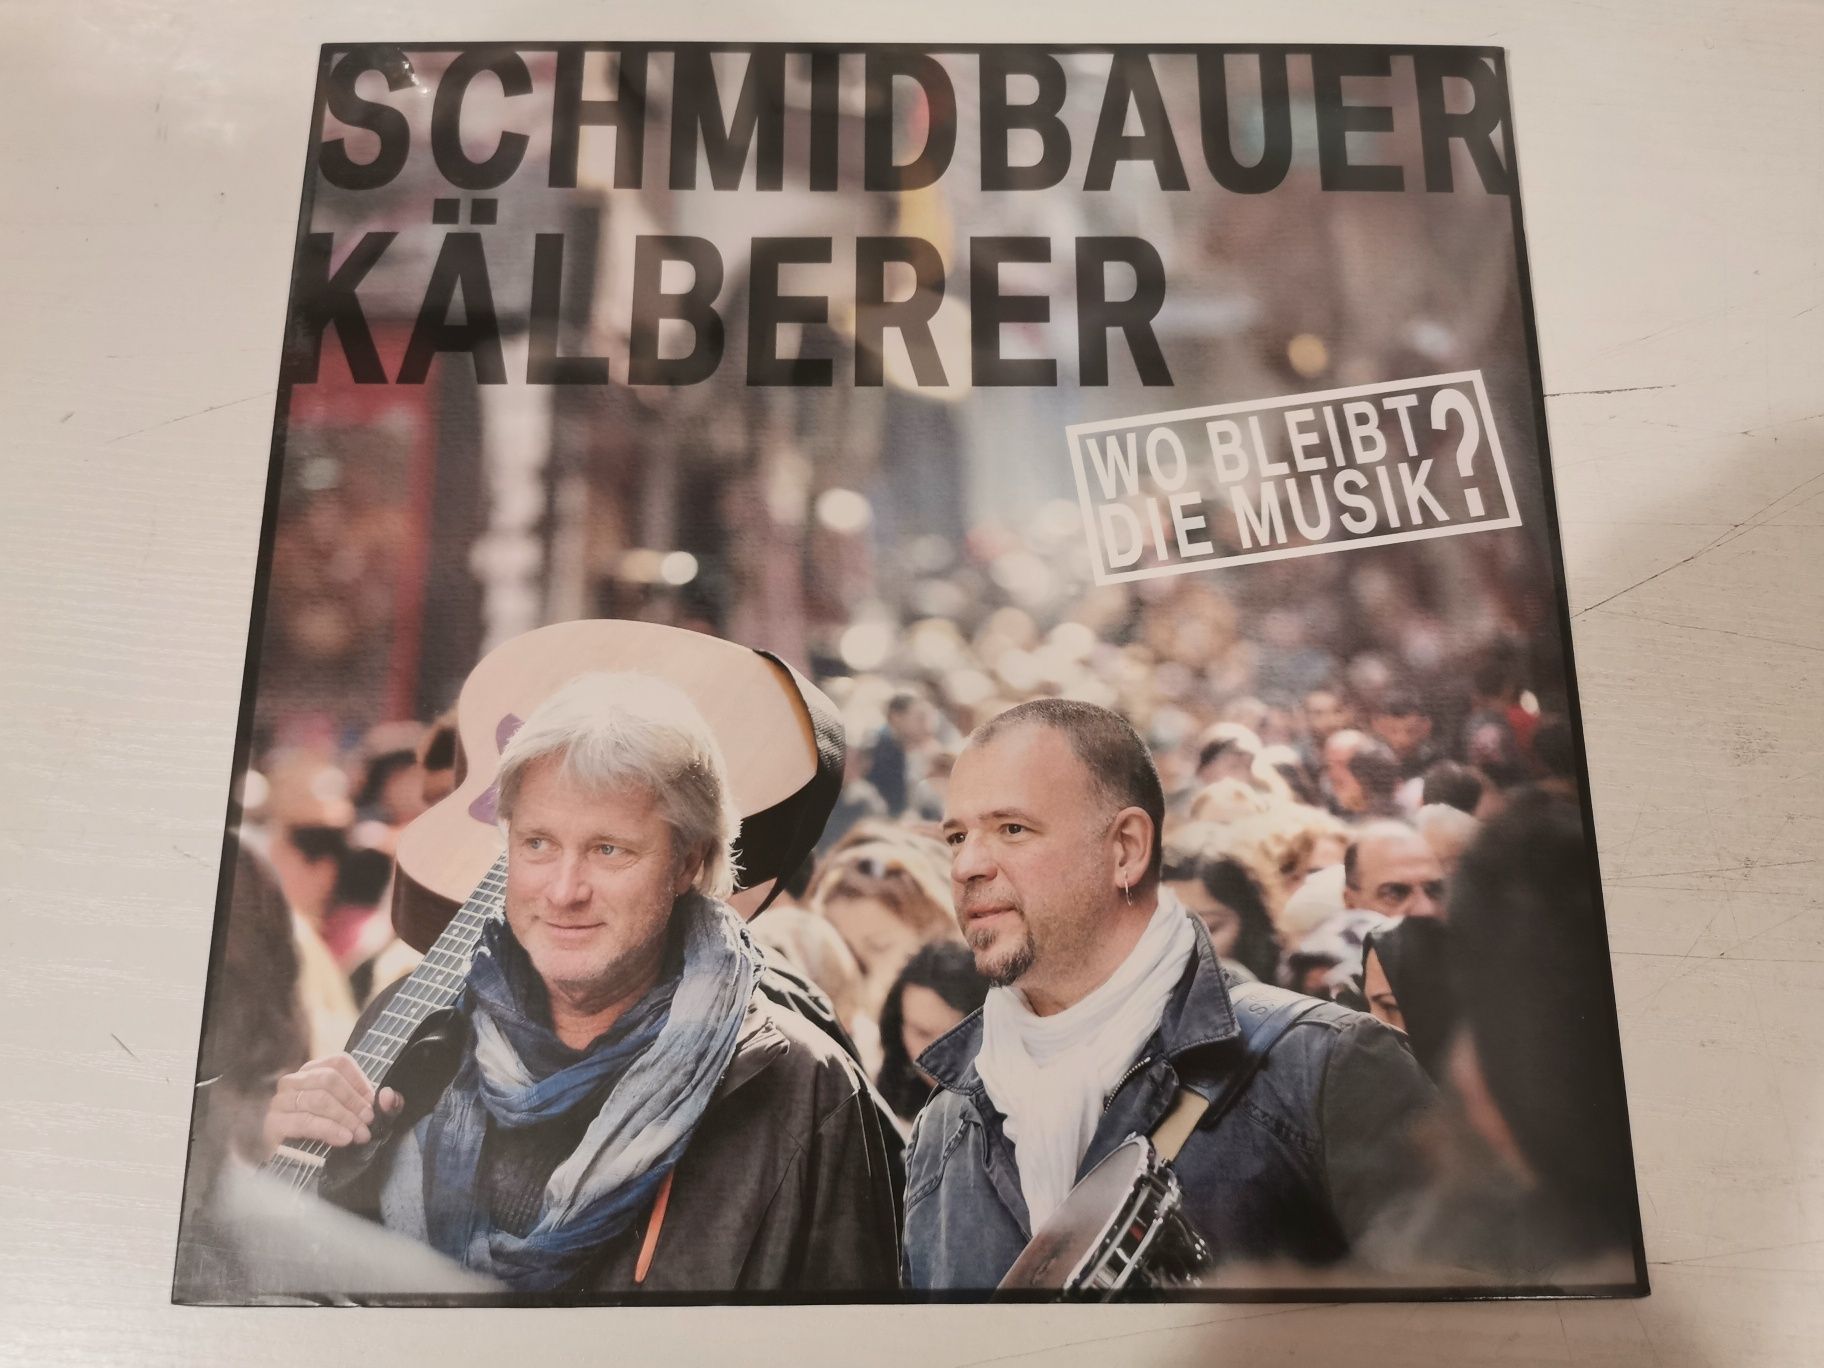 Schmidbauer Kalberer - Wo bleibt die music, LP Winyl, nowy